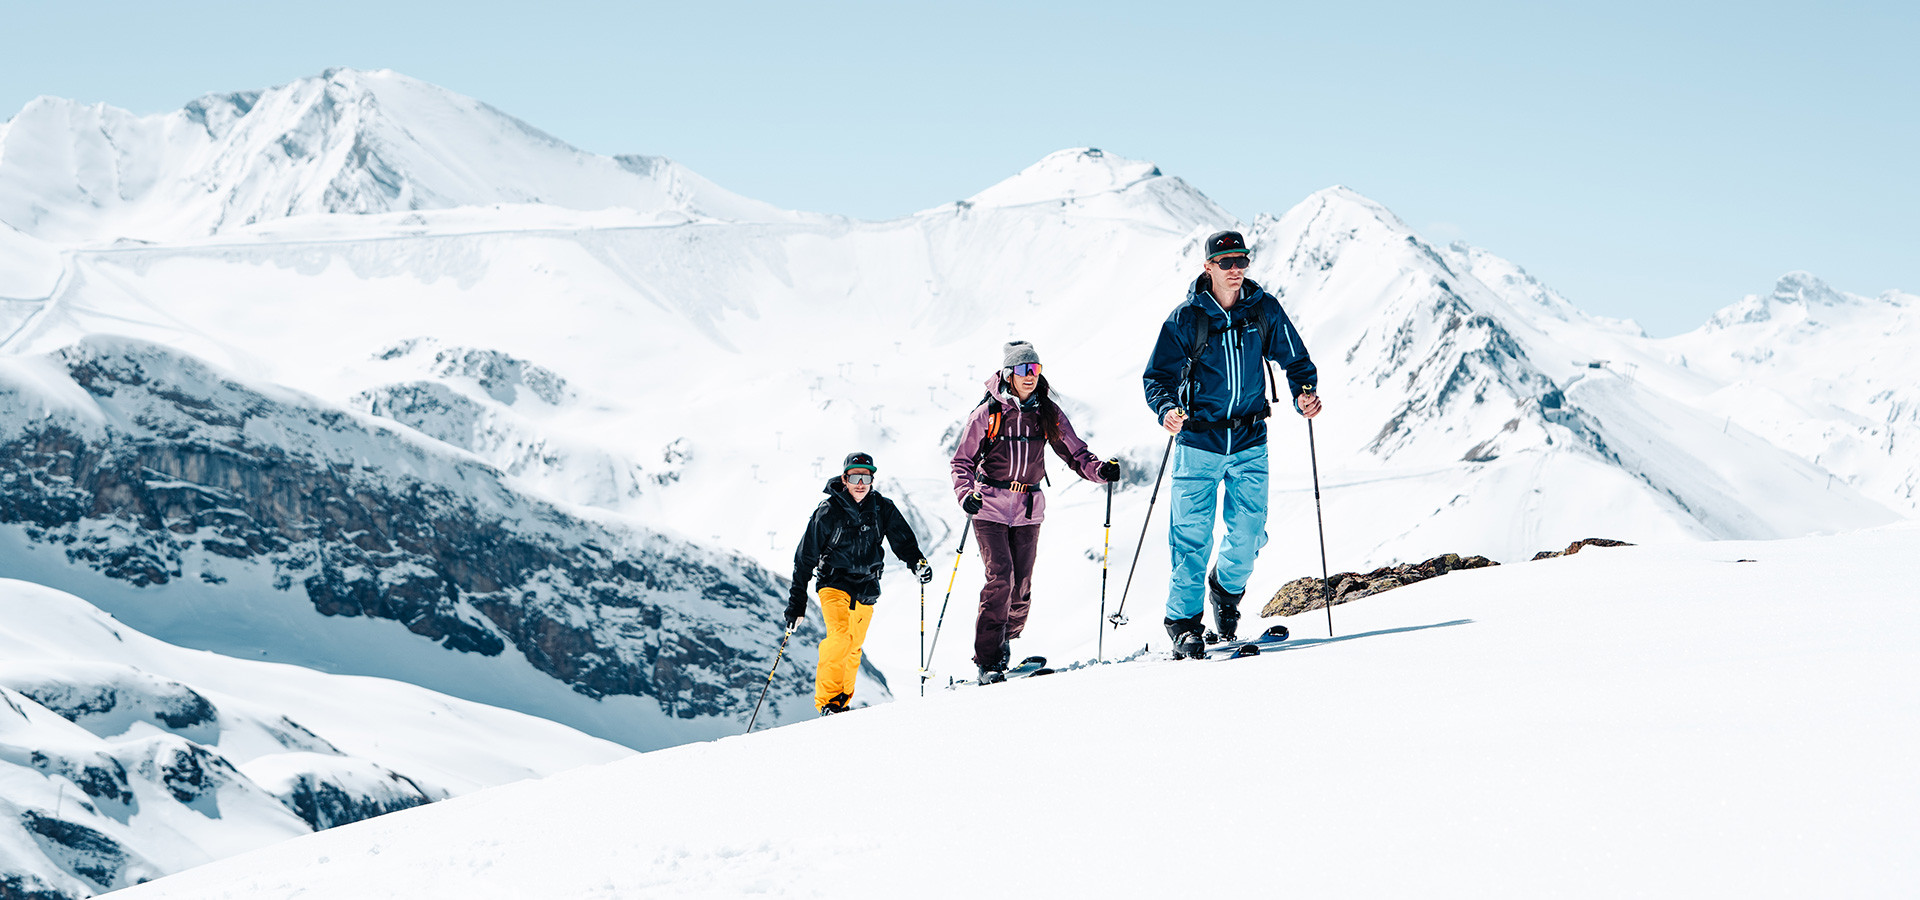 Alpines Skitouren-Abenteuer traumhafte Tiefschneeabfahrten